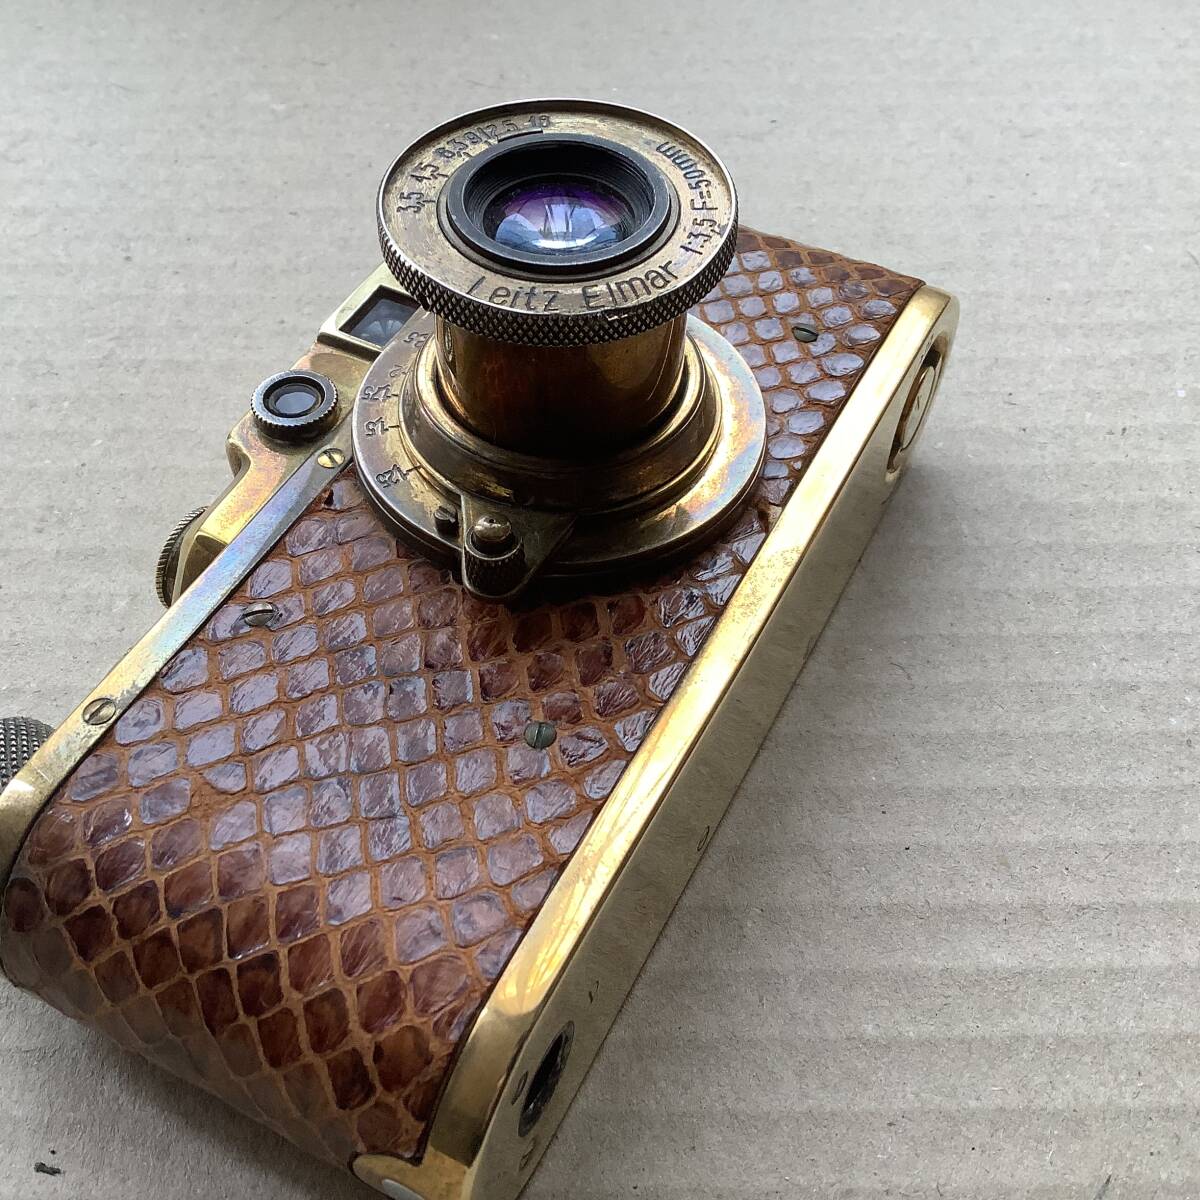  fake? Leica range finder bar nak gold color antique film camera retro Vintage junk 